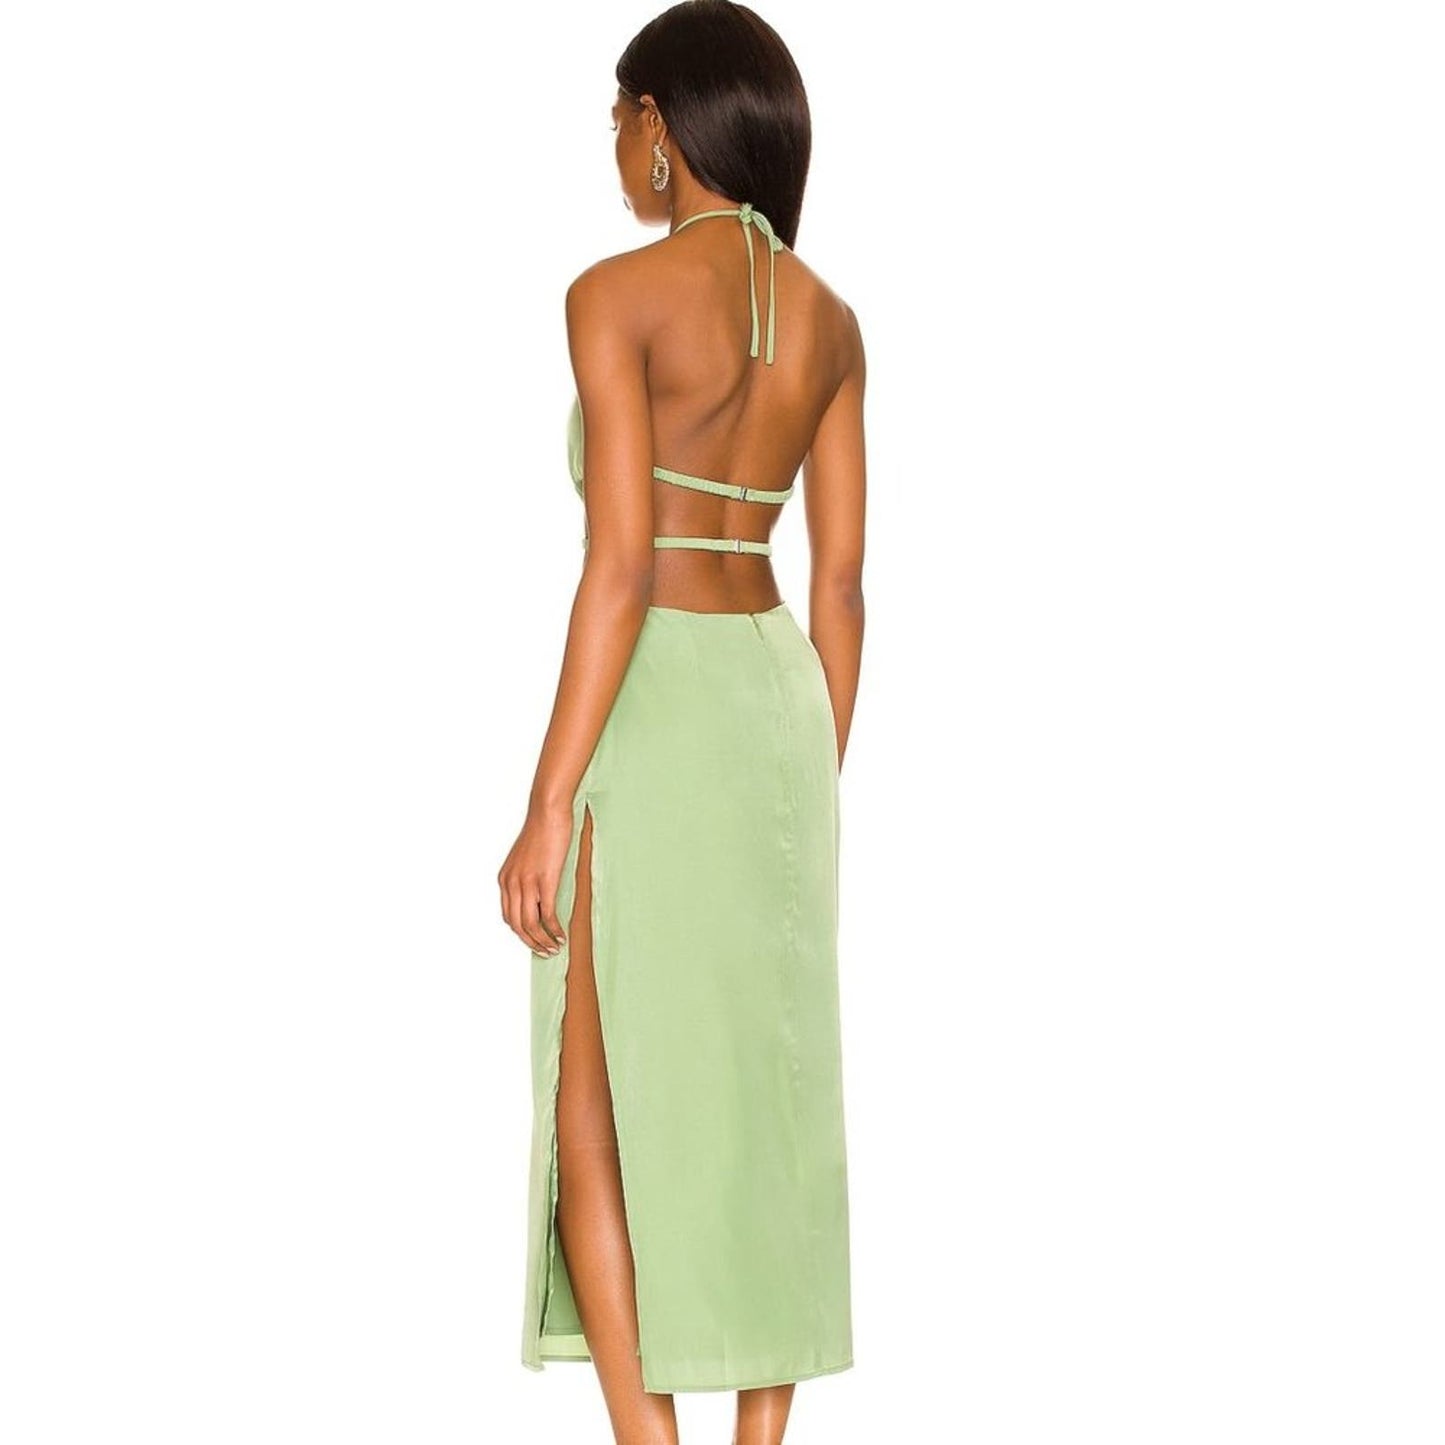 Camila Coelho Remi Midi Dress in Jade Green NWT Size Small